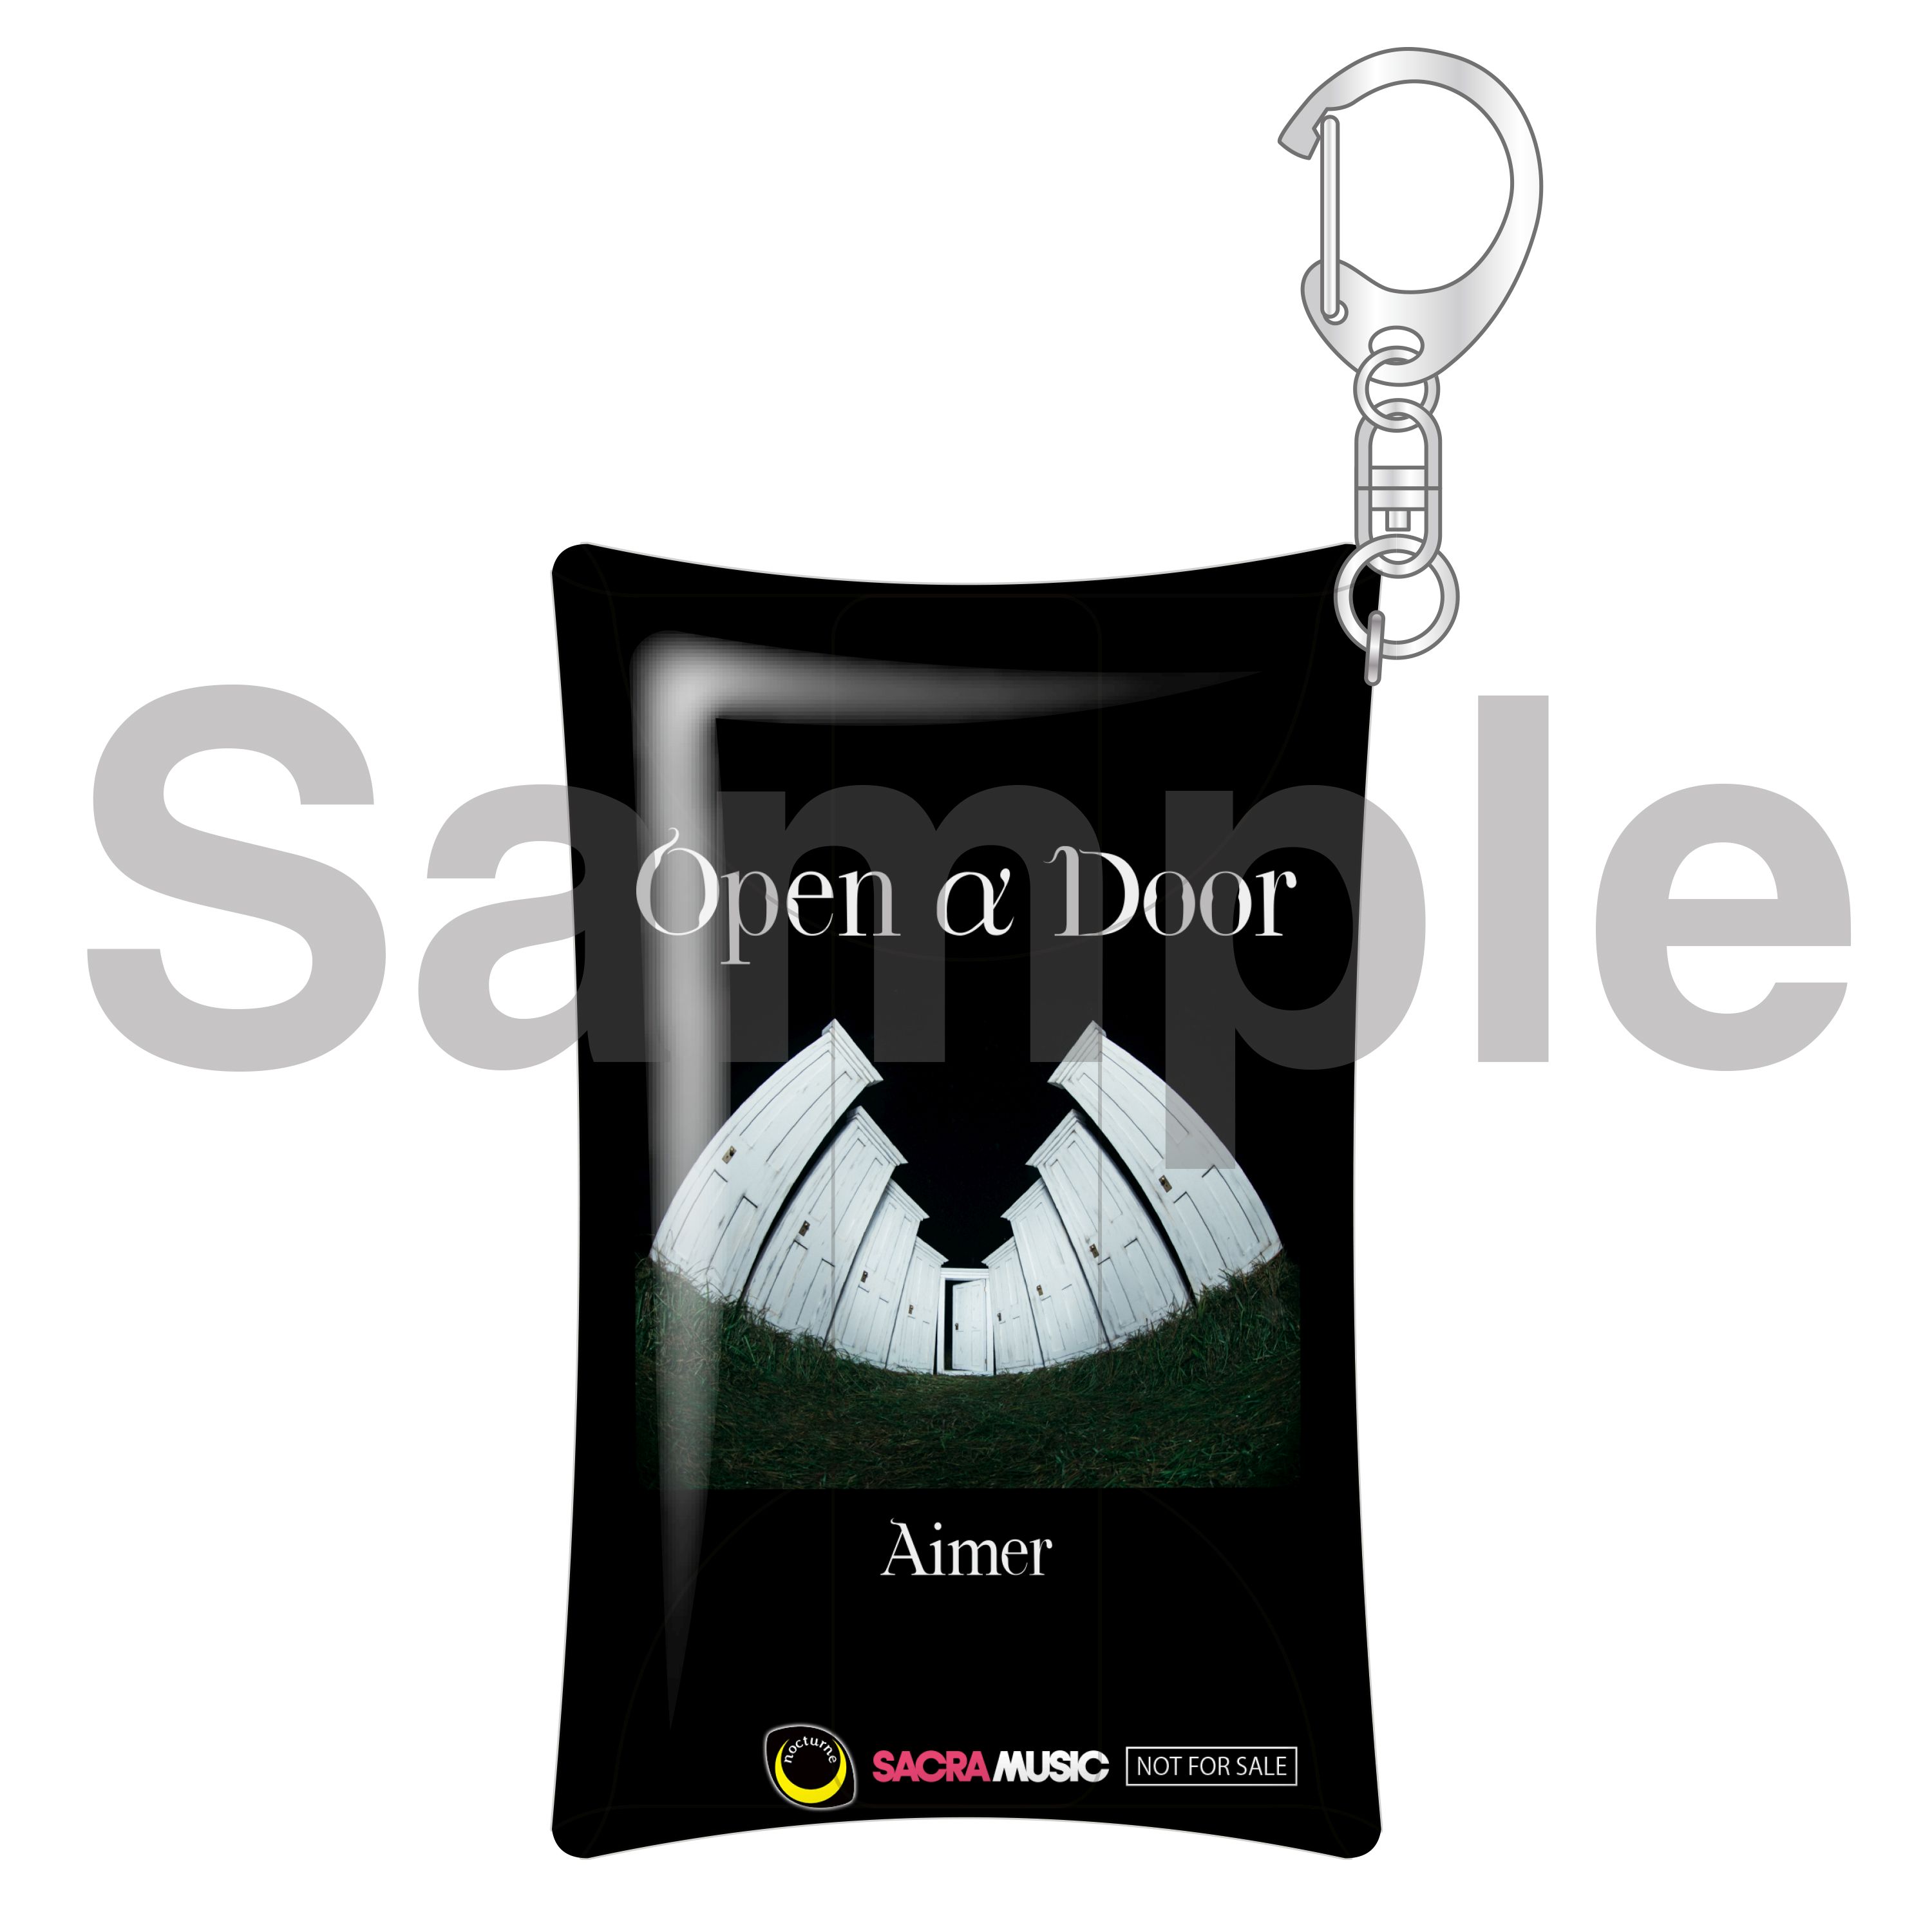 Aimerアルバム「Open a Door」のマルチポーチ 通販